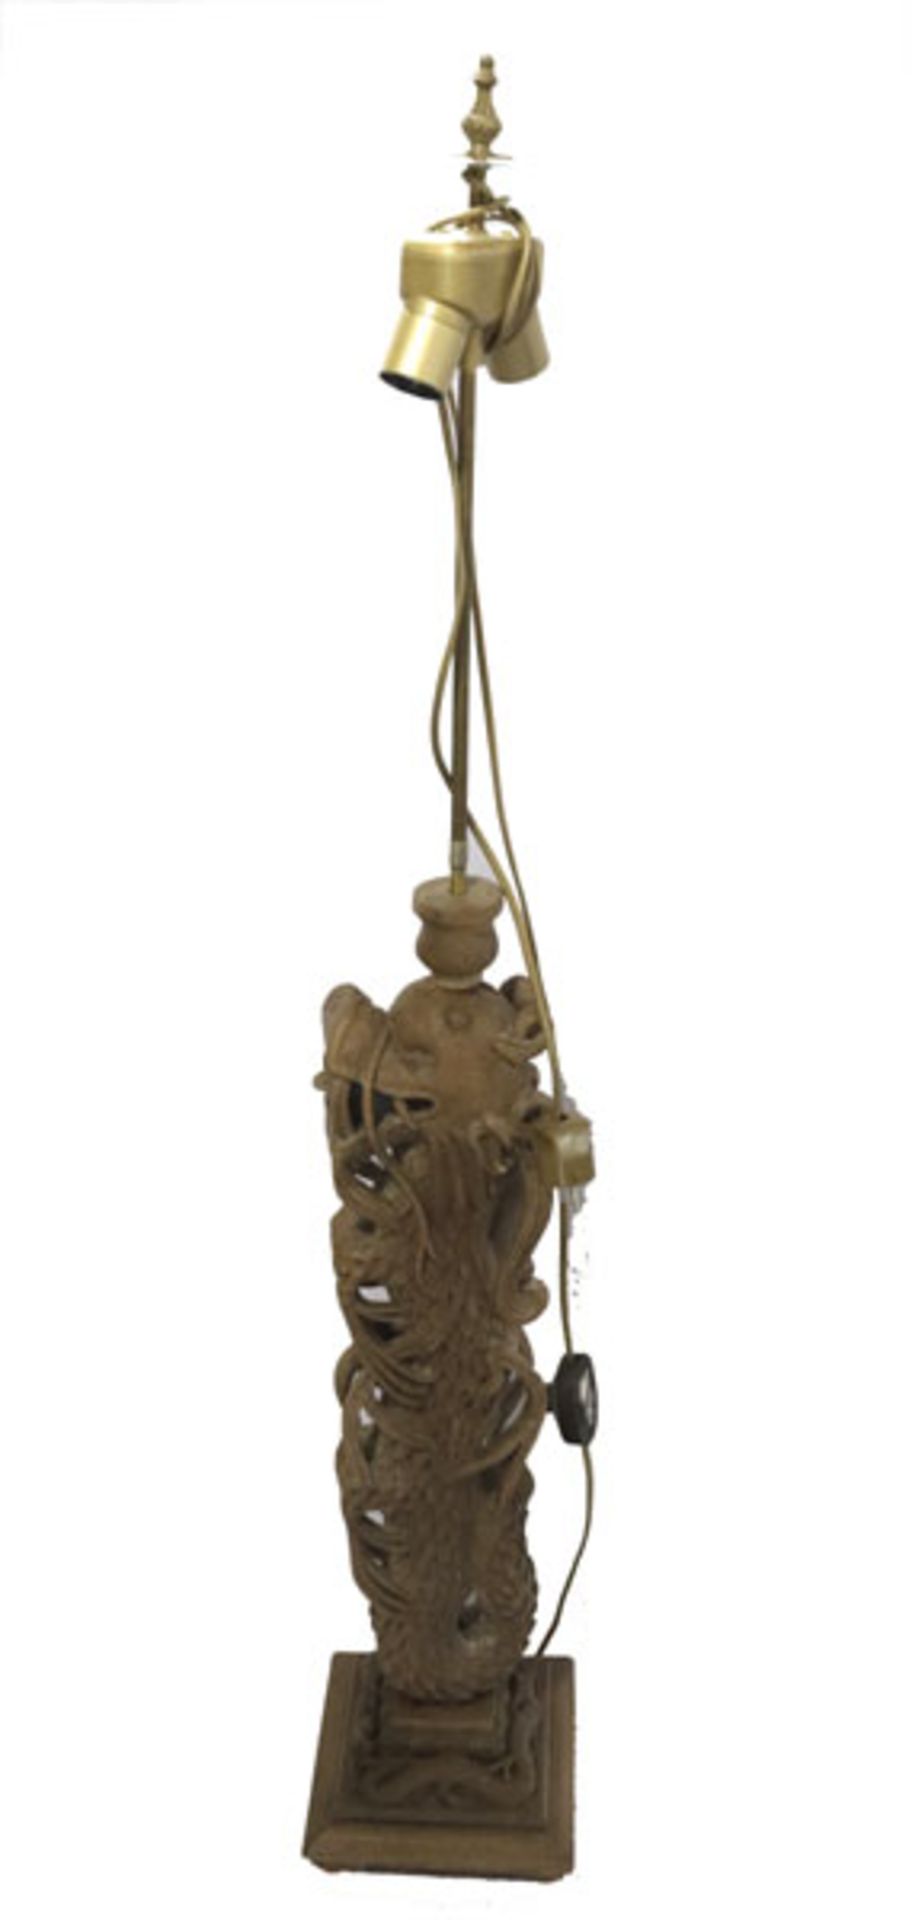 Asiatische Stehlampe mit geschnitzem Lampenfuß in plastischem Drachendekor, H 119 cm, ohne